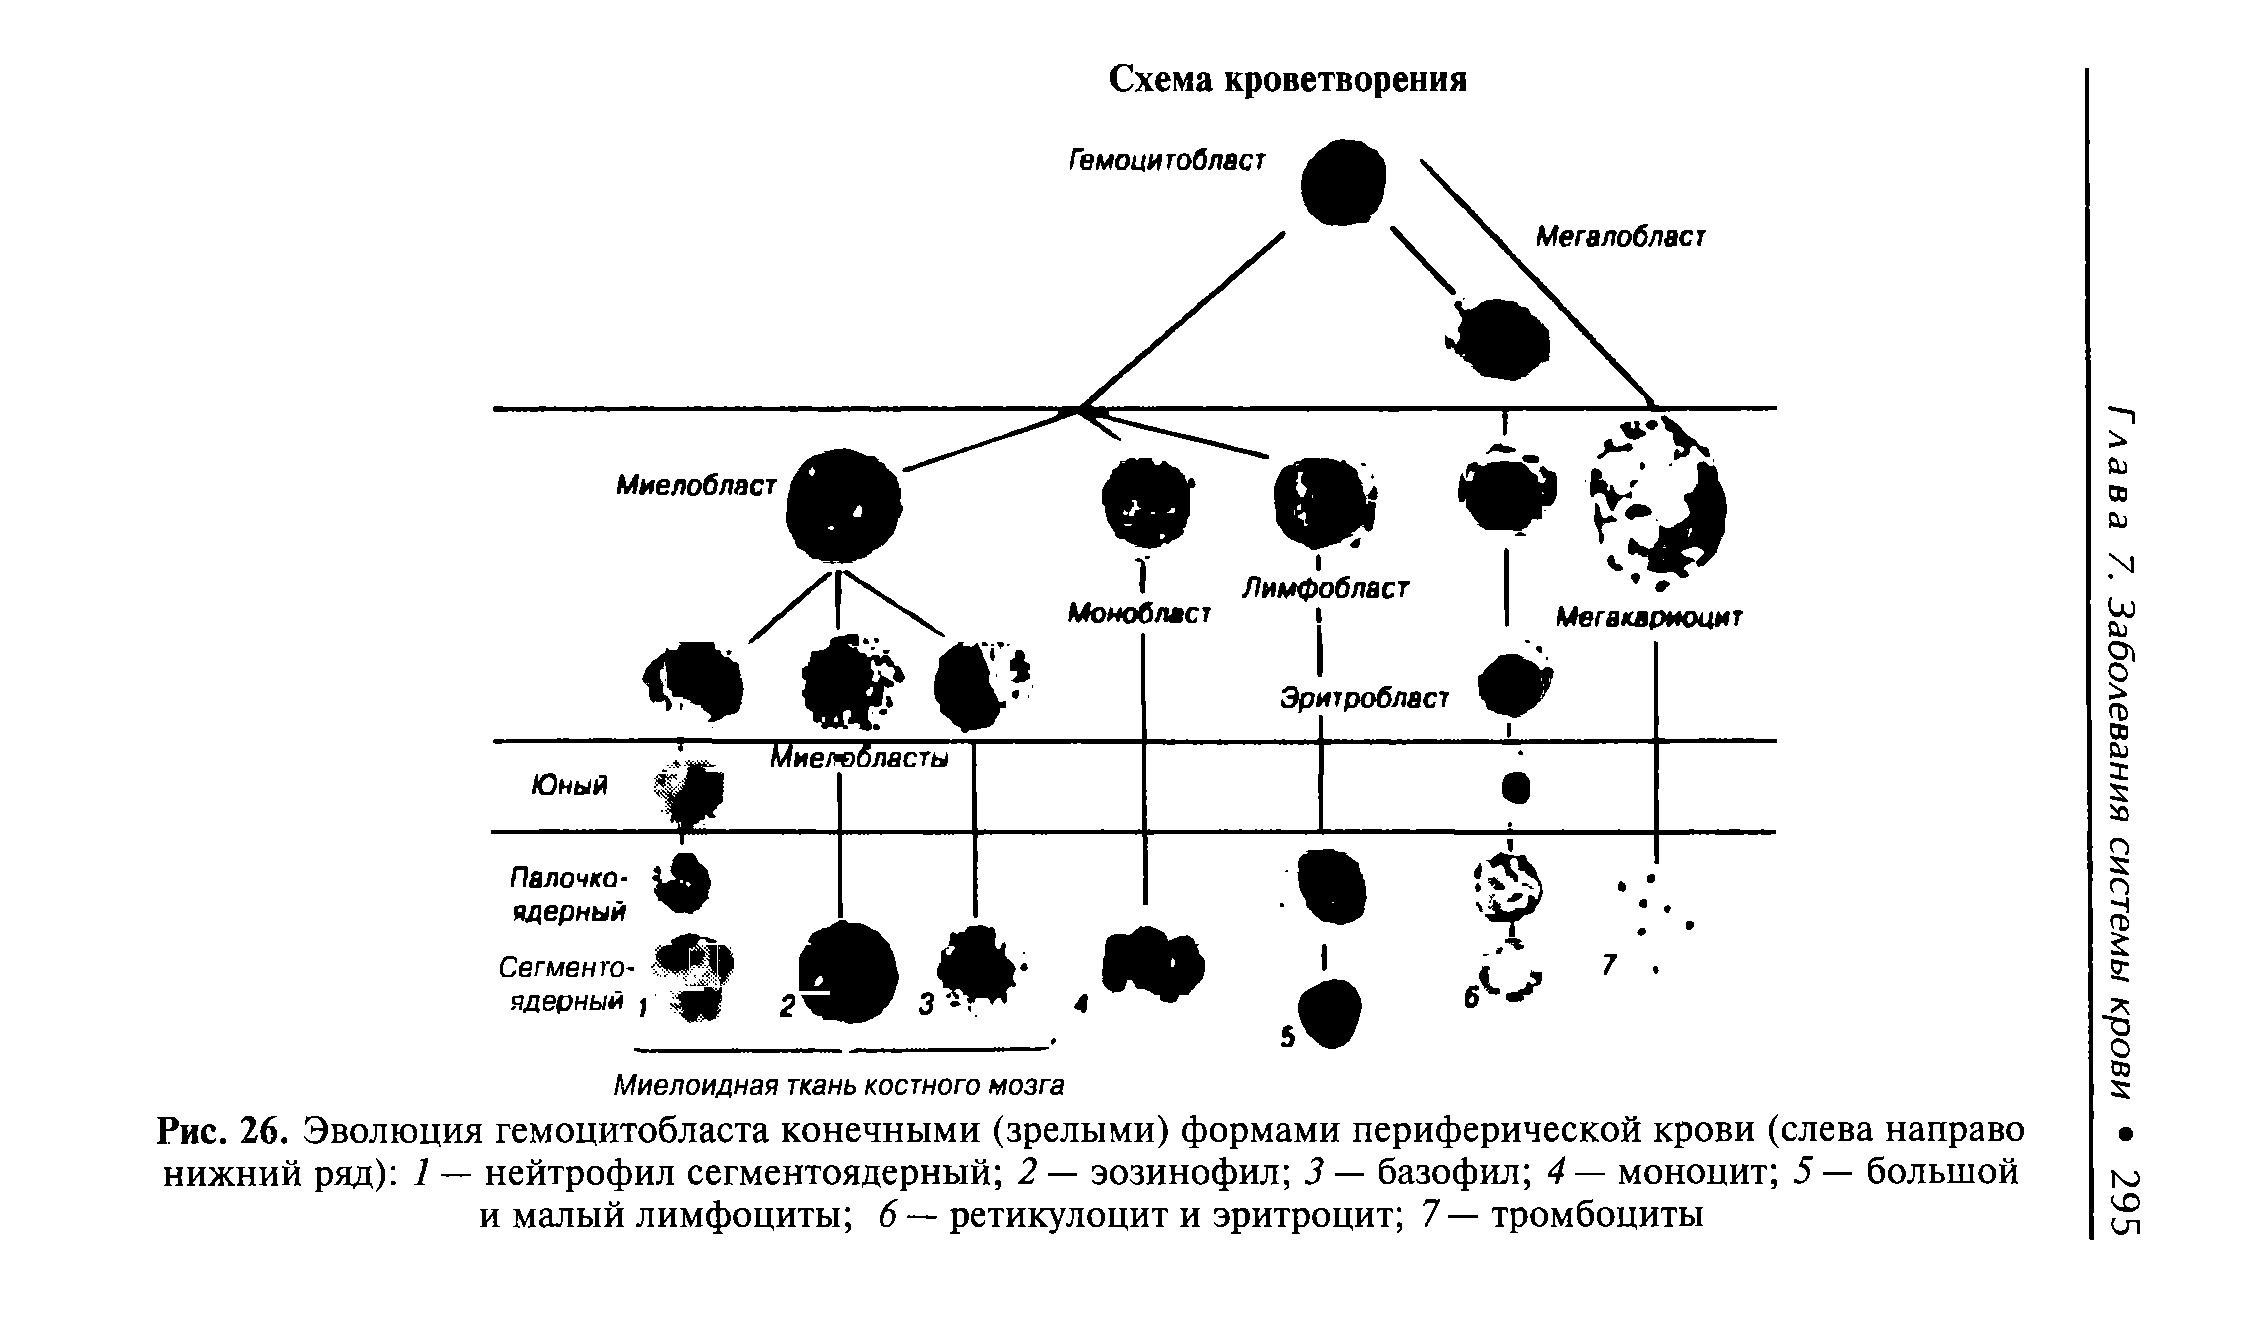 Рис. 26. Эволюция гемоцитобласта конечными (зрелыми) формами периферической крови (слева направо нижний ряд) 1 — нейтрофил сегментоядерный 2 — эозинофил 3 — базофил 4— моноцит 5— большой и малый лимфоциты 6 — ретикулоцит и эритроцит 7—тромбоциты...